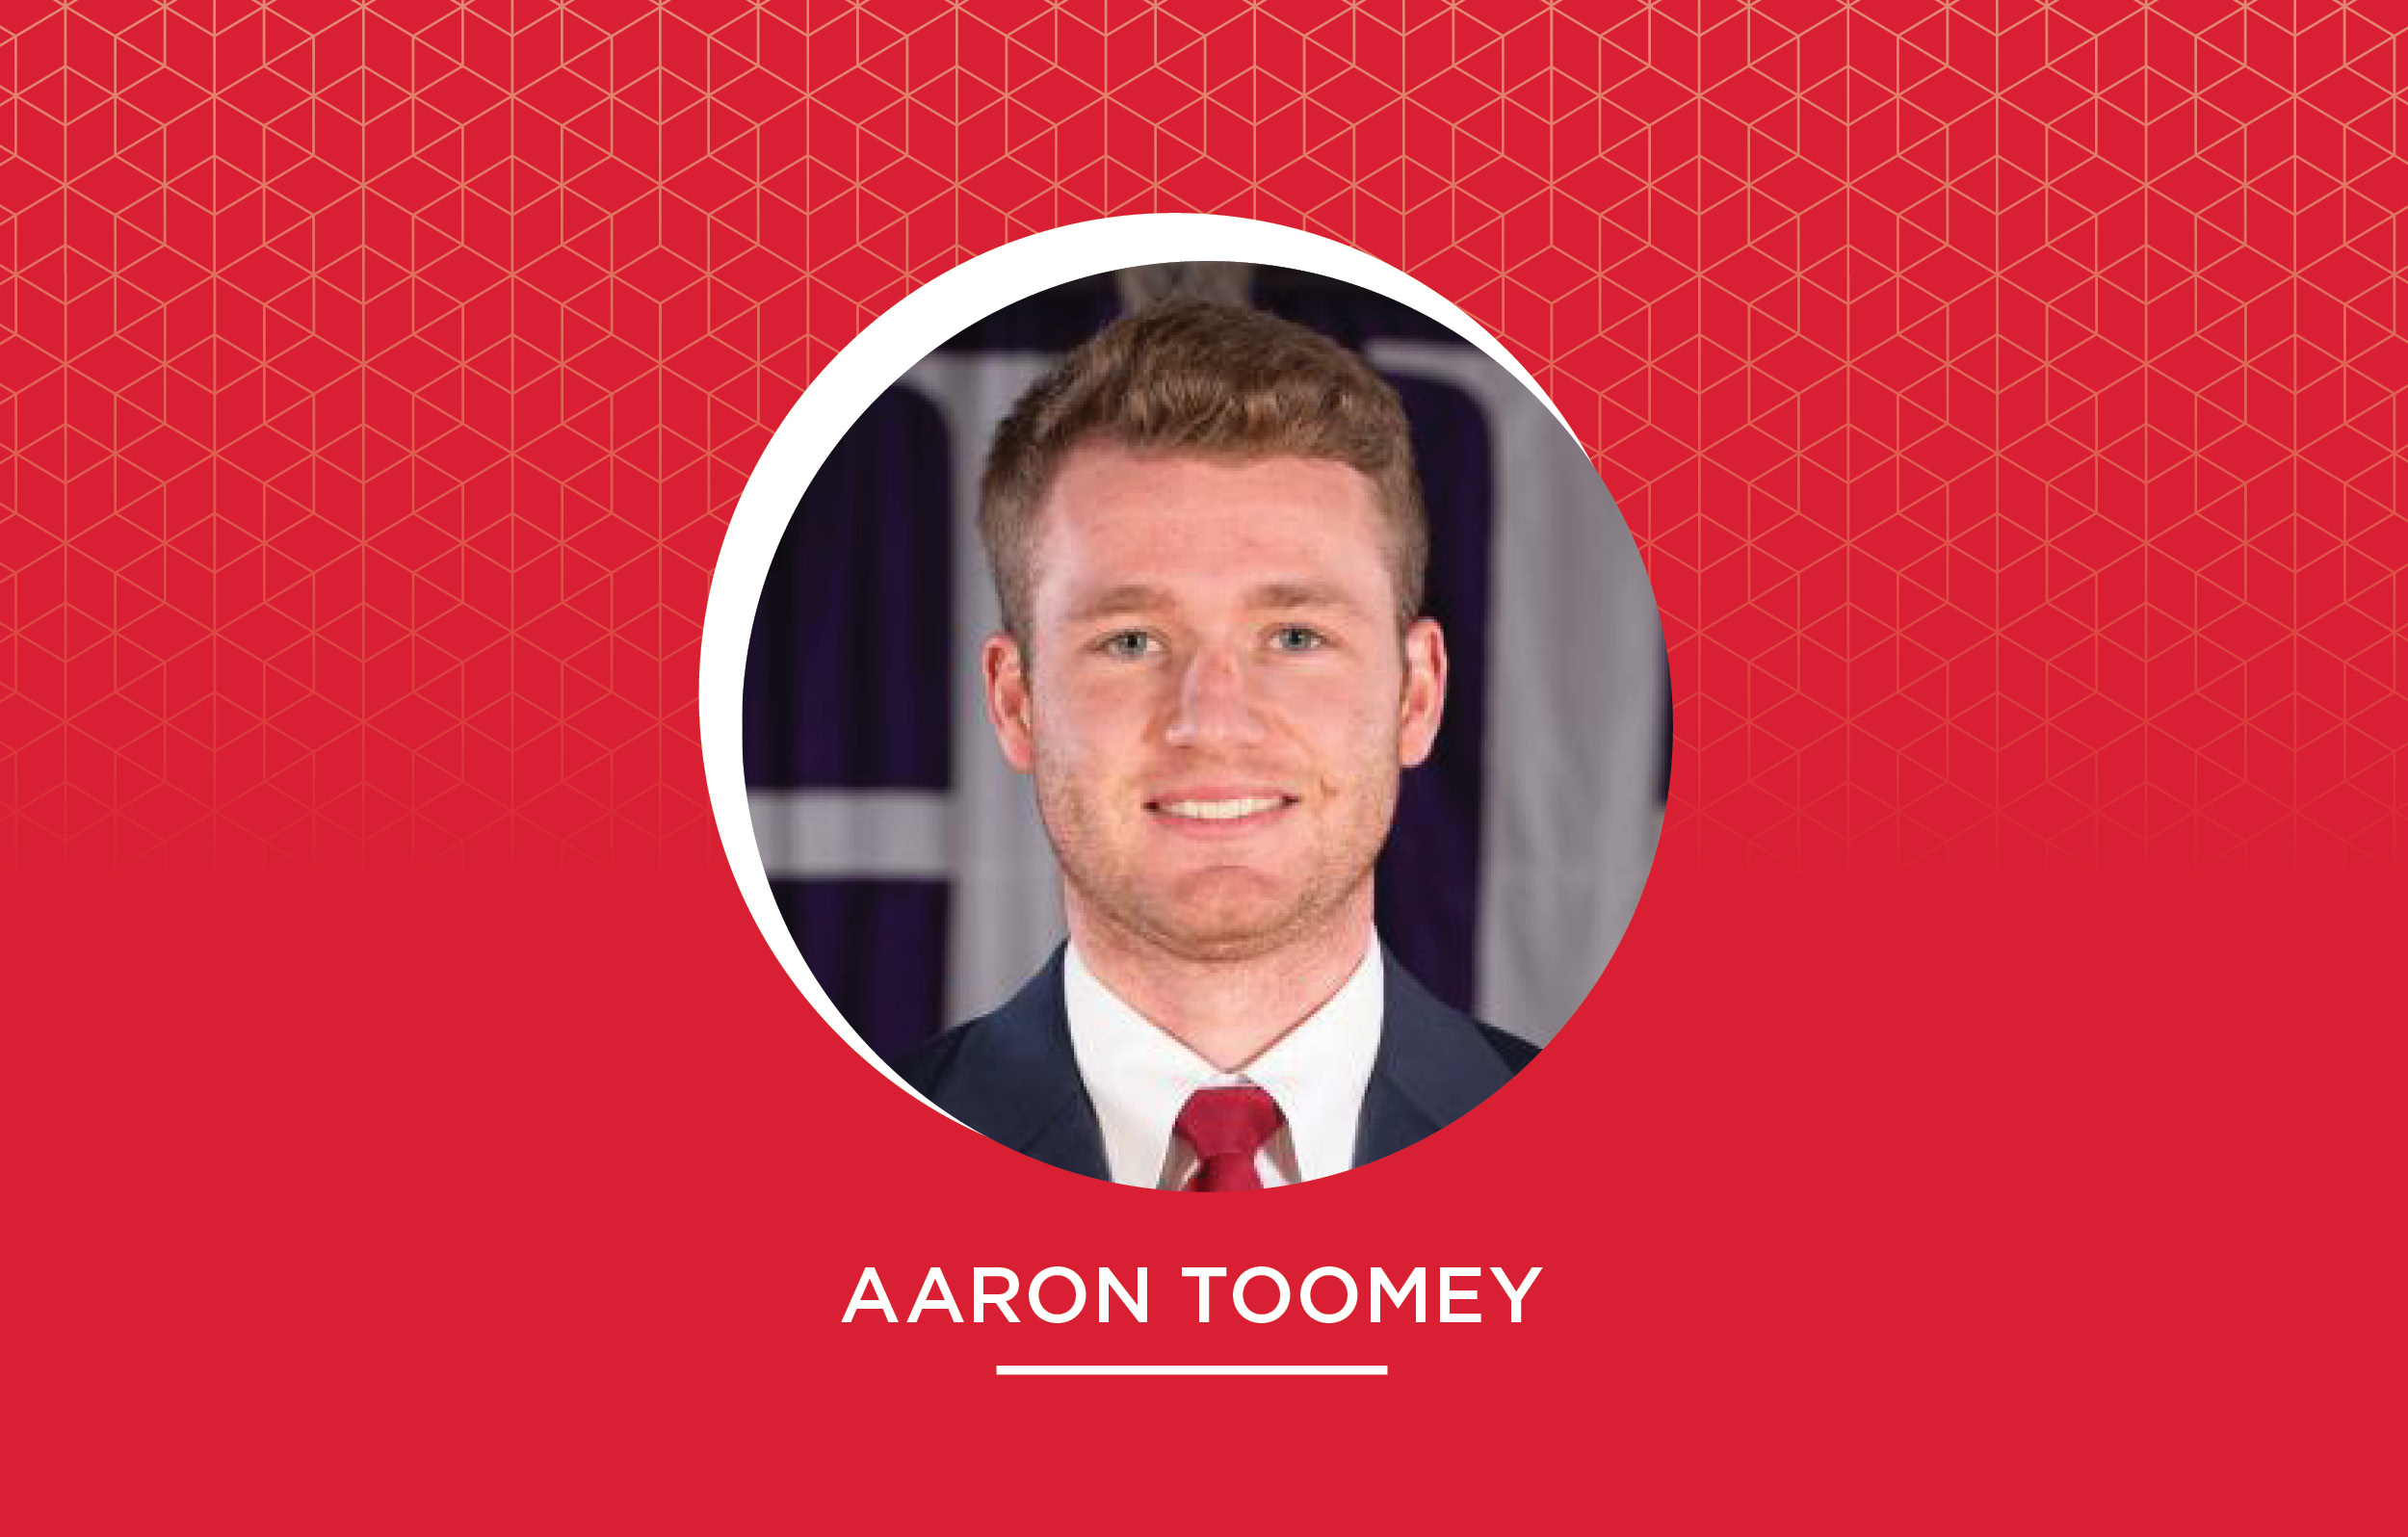 Aaron Toomey